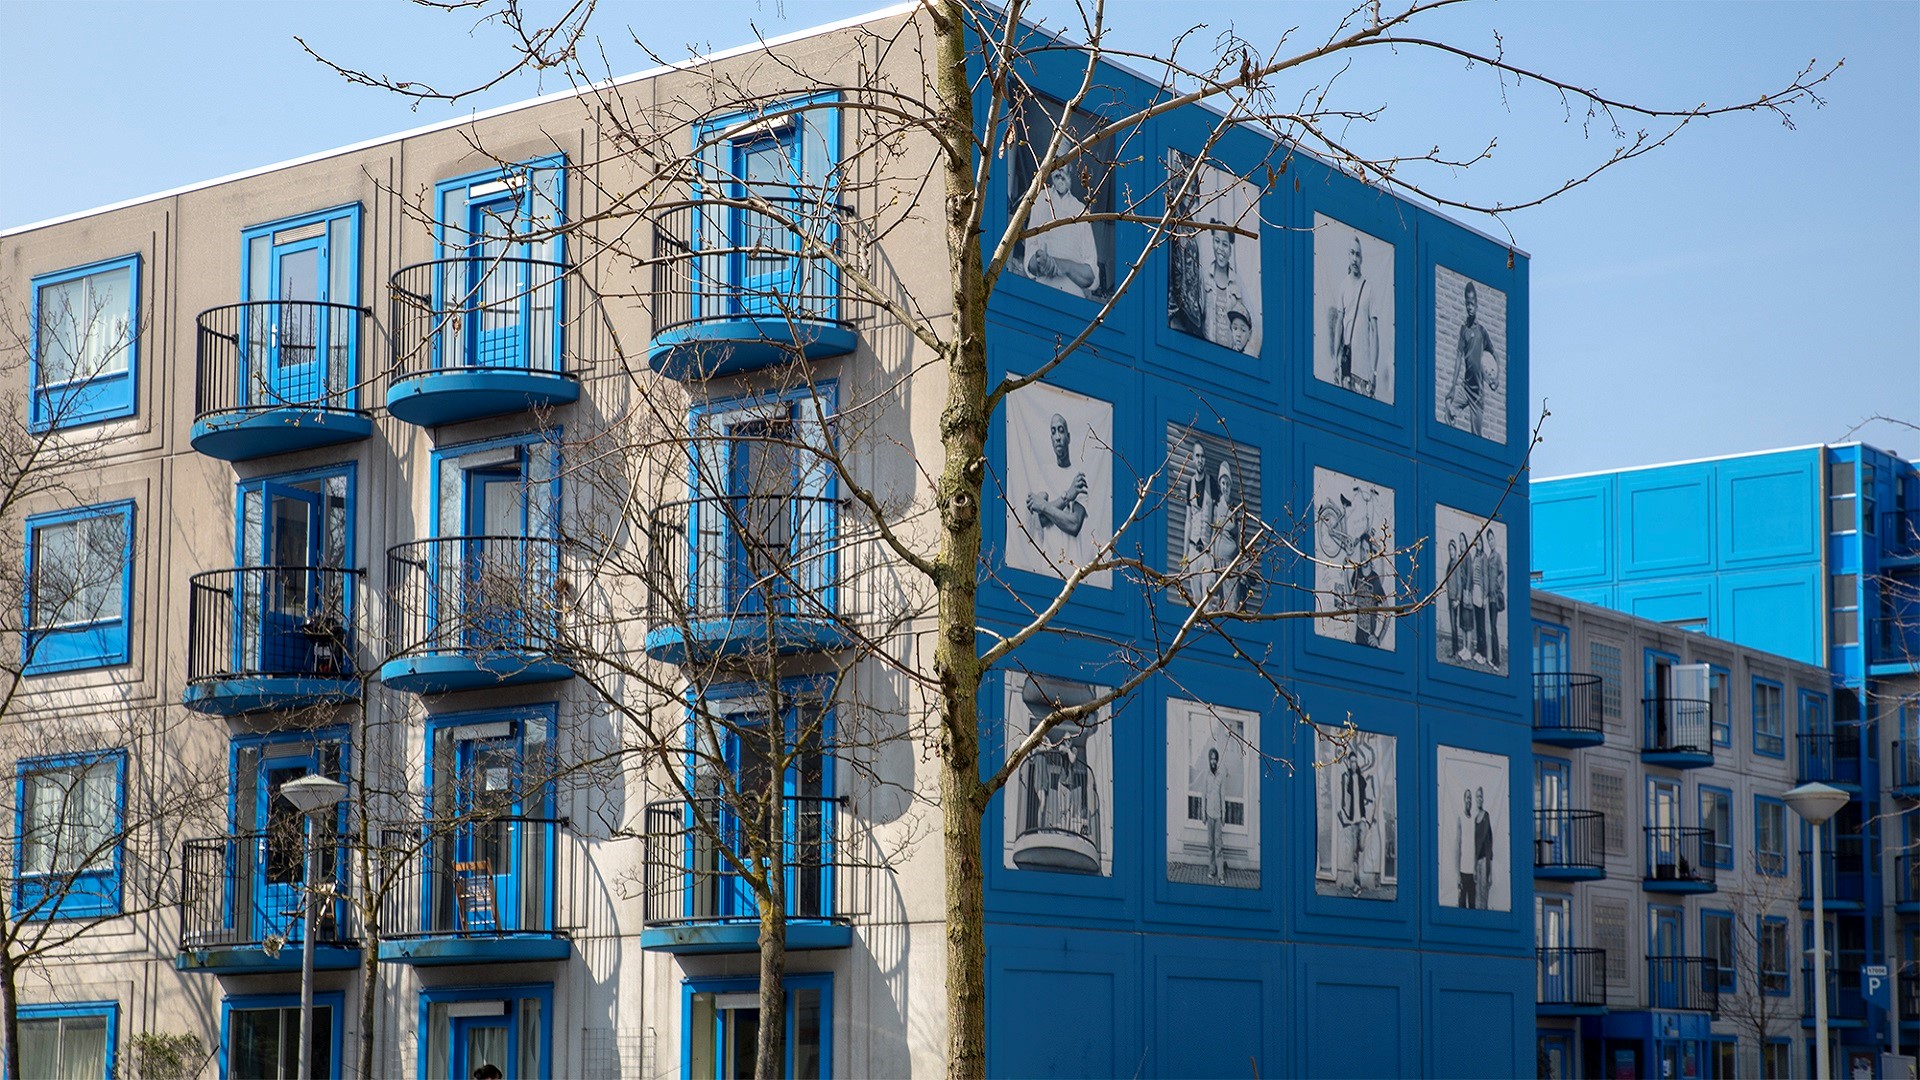 Appartementen in Bullewijk, Amsterdam Zuidoost